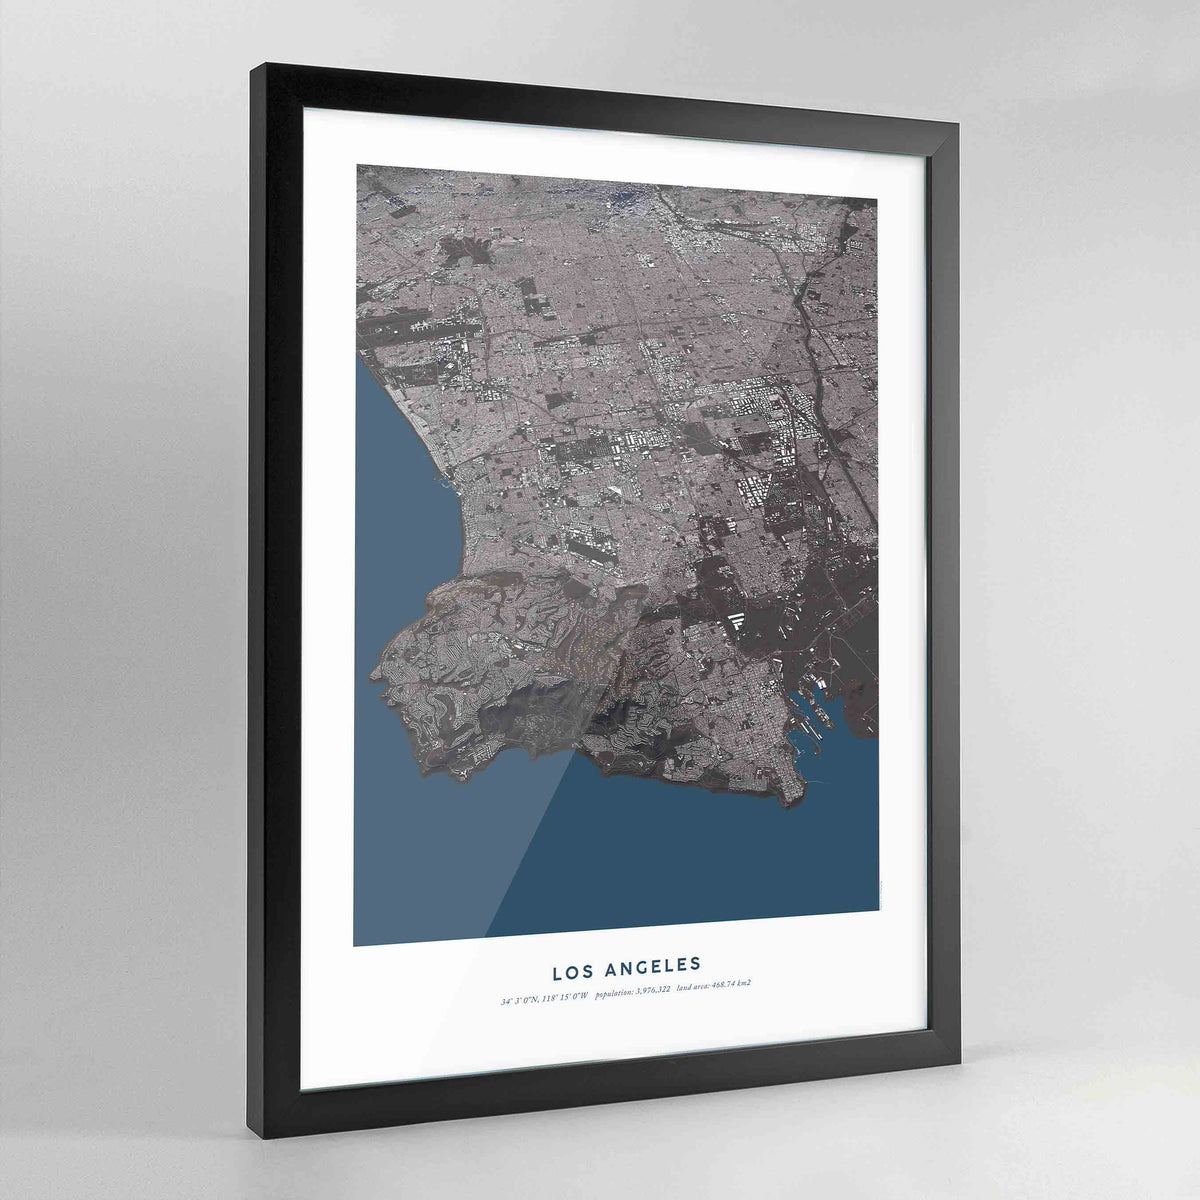 Los Angeles 3D City Model - Framed